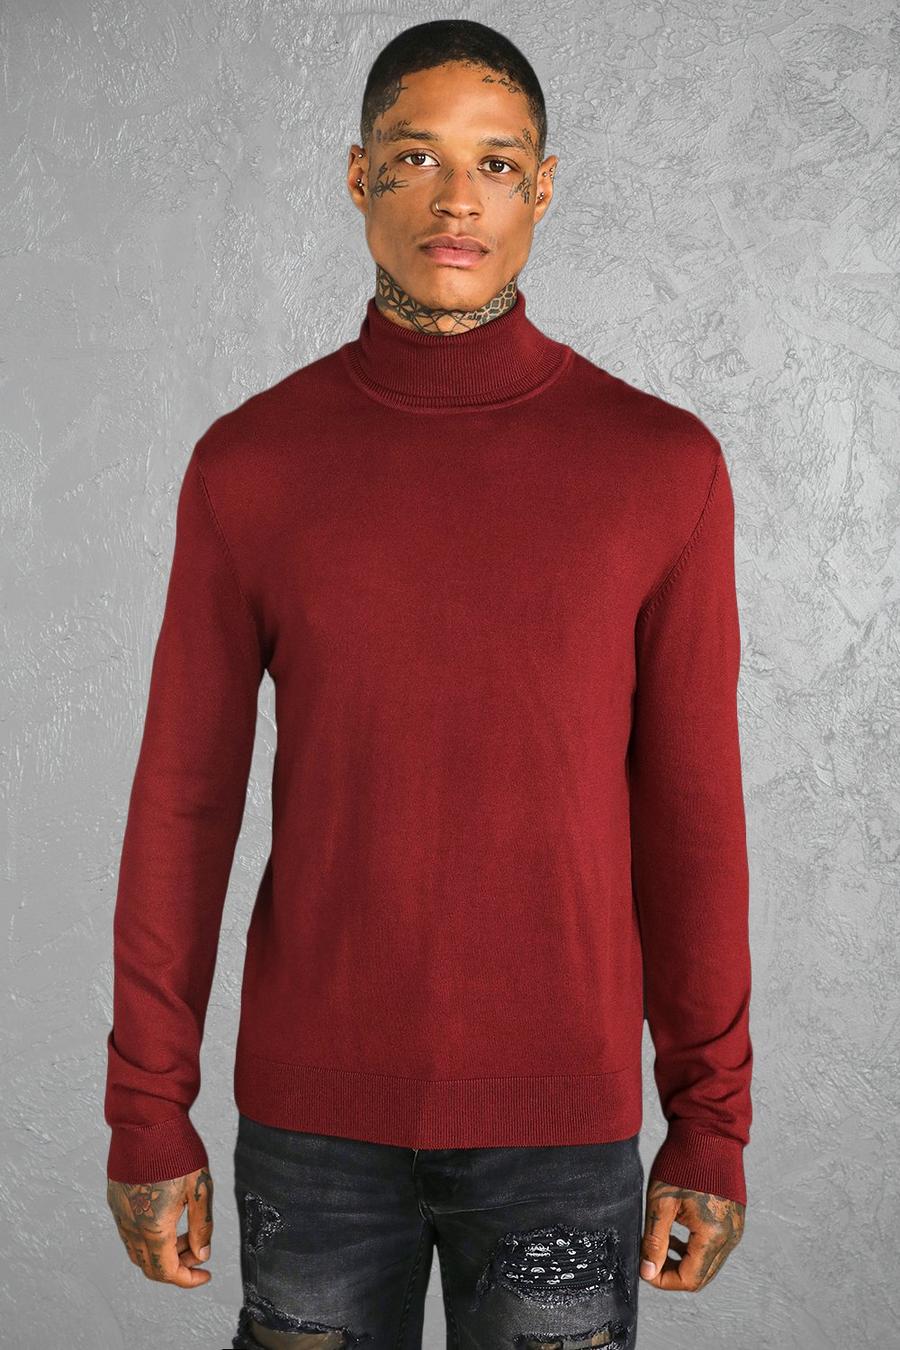 אדום בורגונדי rojo סוודר בגזרה רגילה מחומרים ממוחזרים עם צווארון נגלל